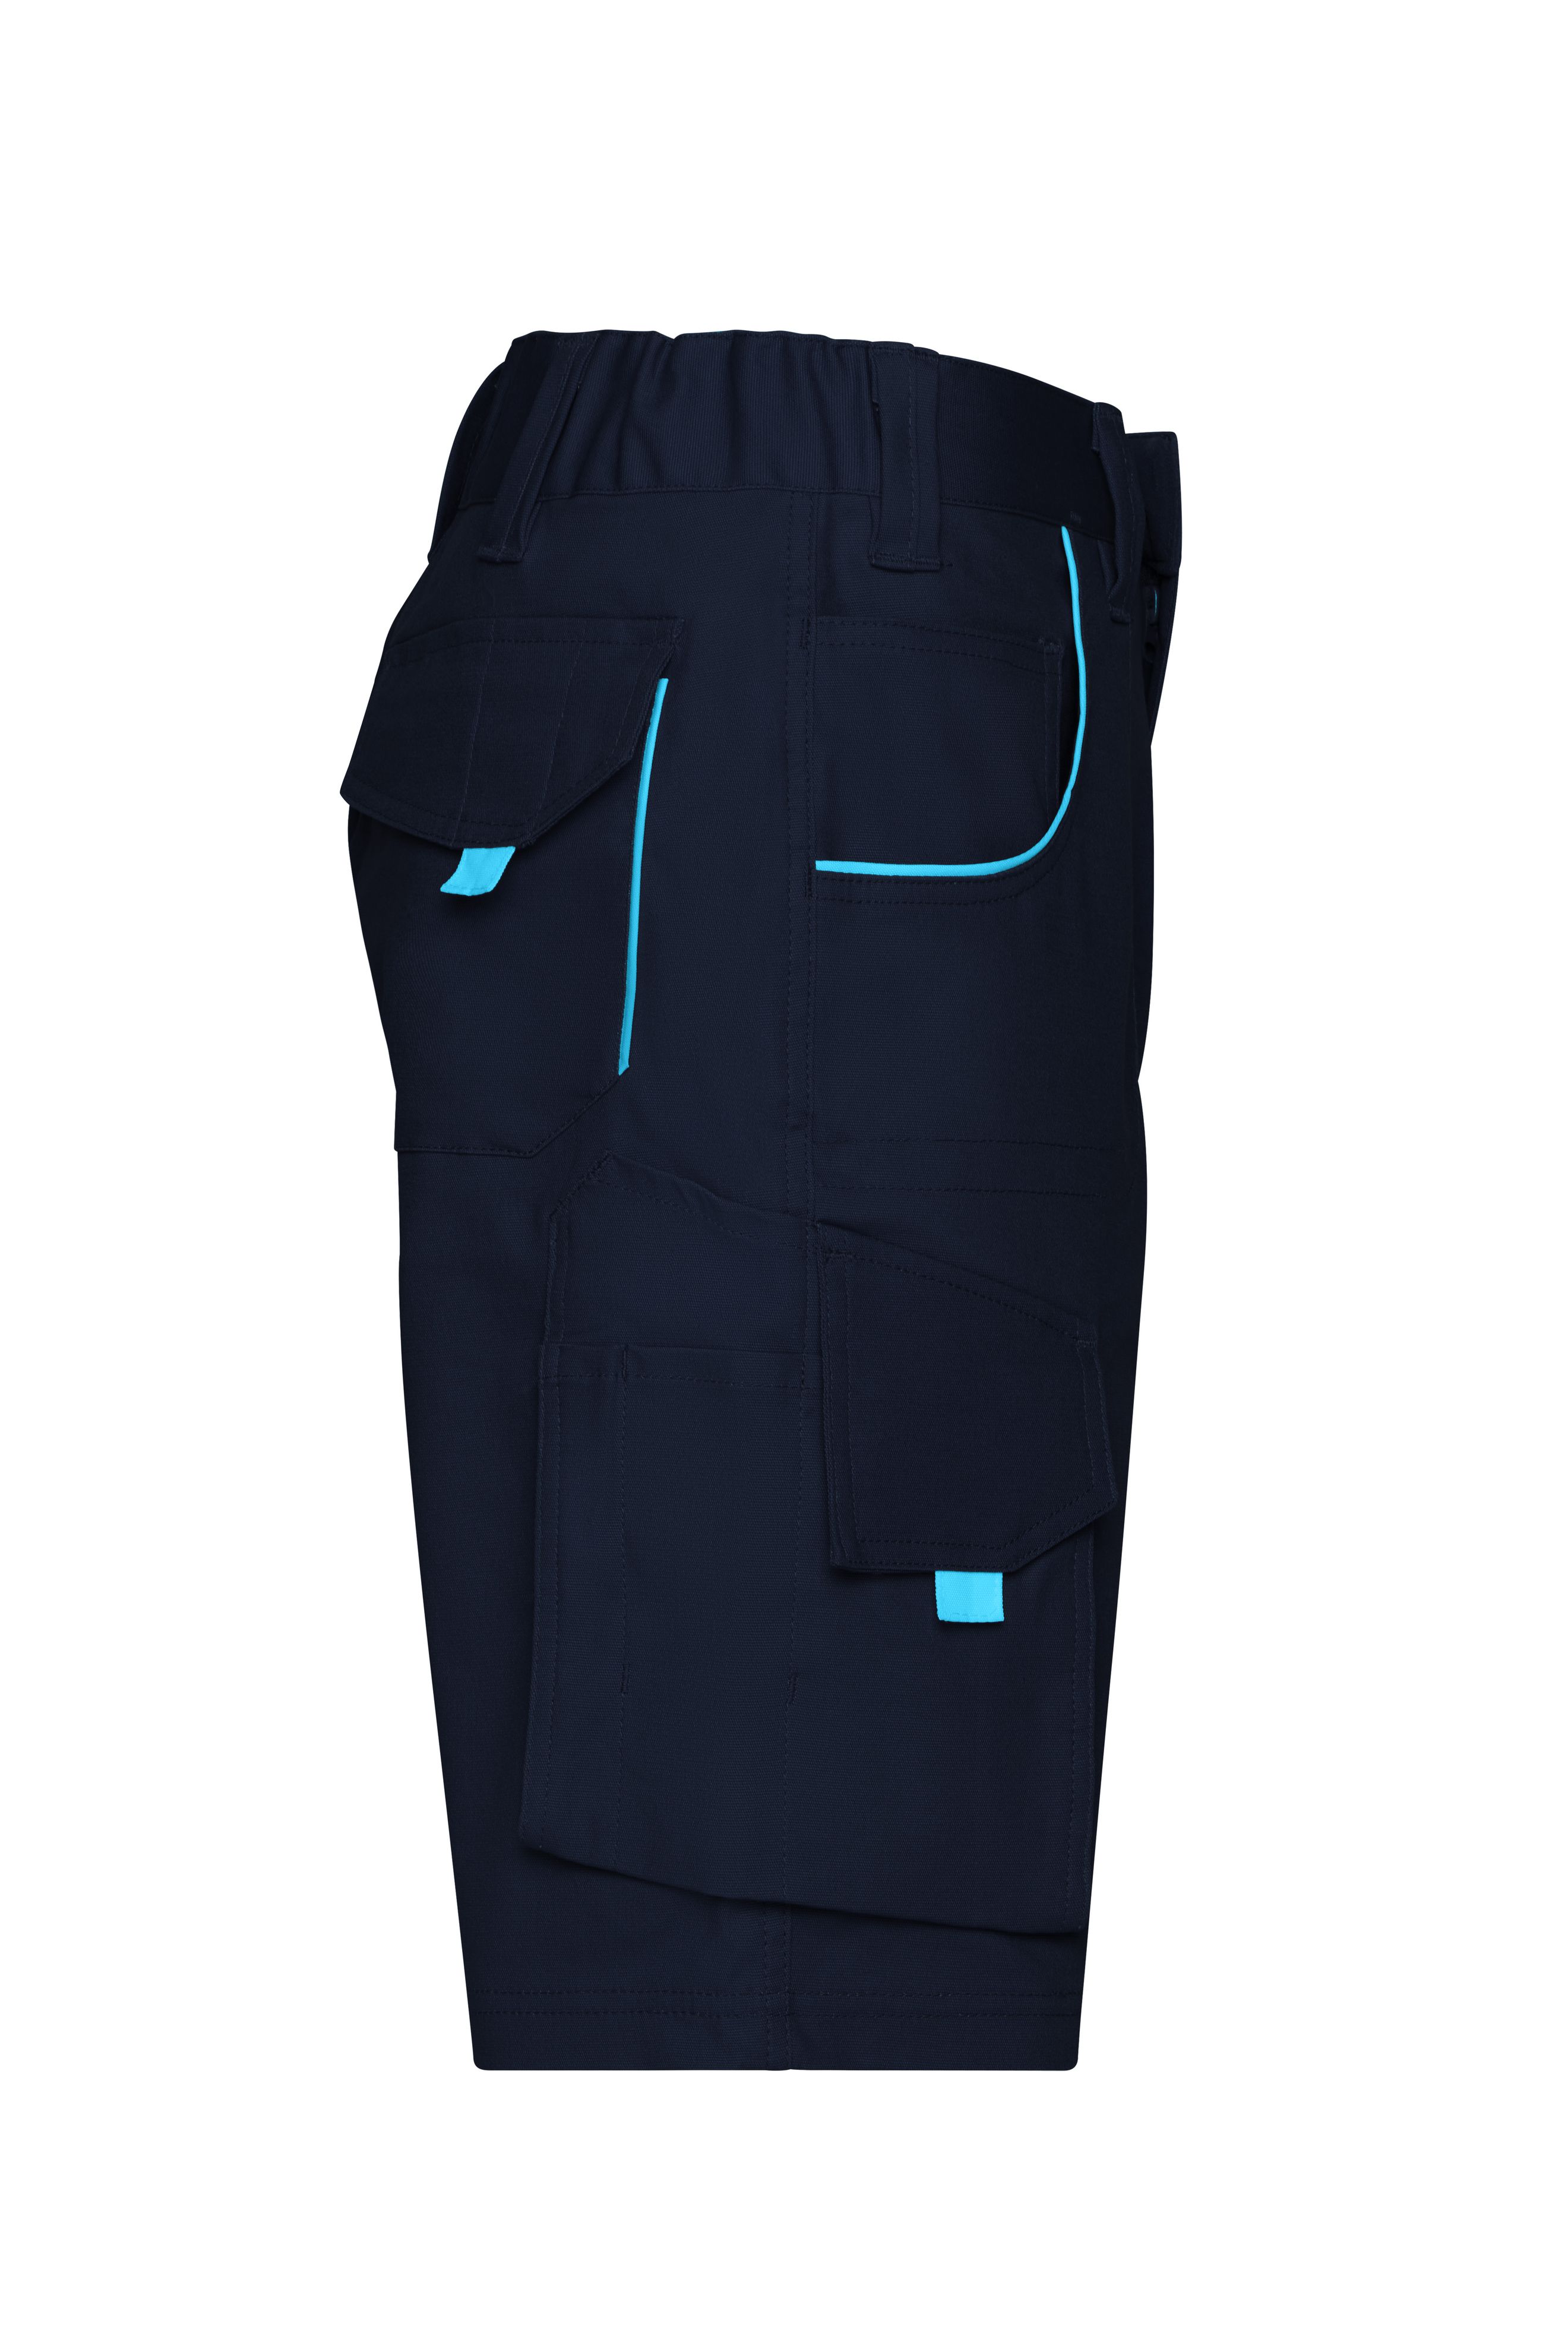 Workwear Bermudas - COLOR - JN872 Funktionelle kurze Hose im sportlichen Look mit hochwertigen Details